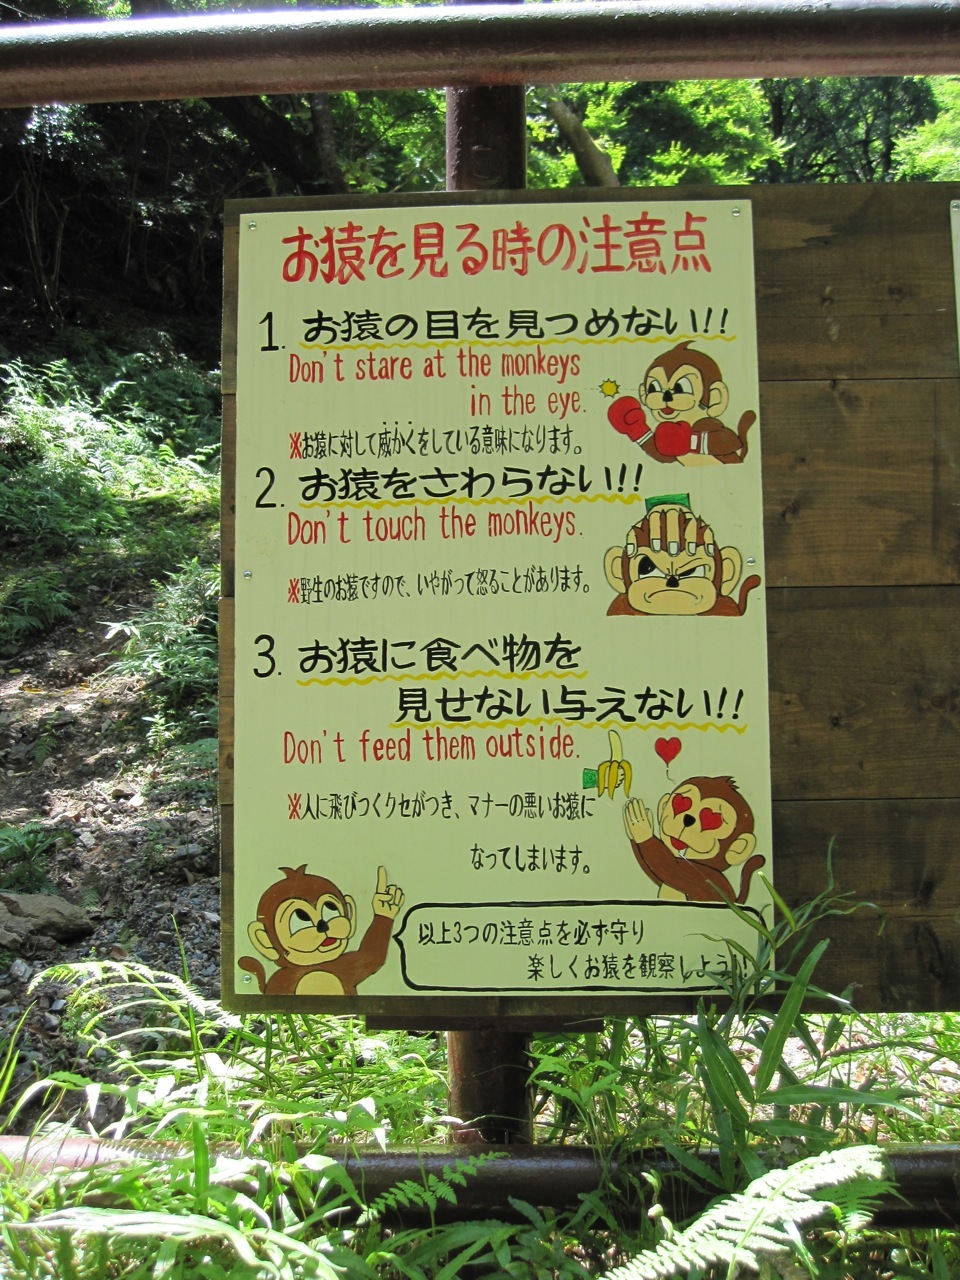 Arashiyama-Monkeys-05-1.jpg